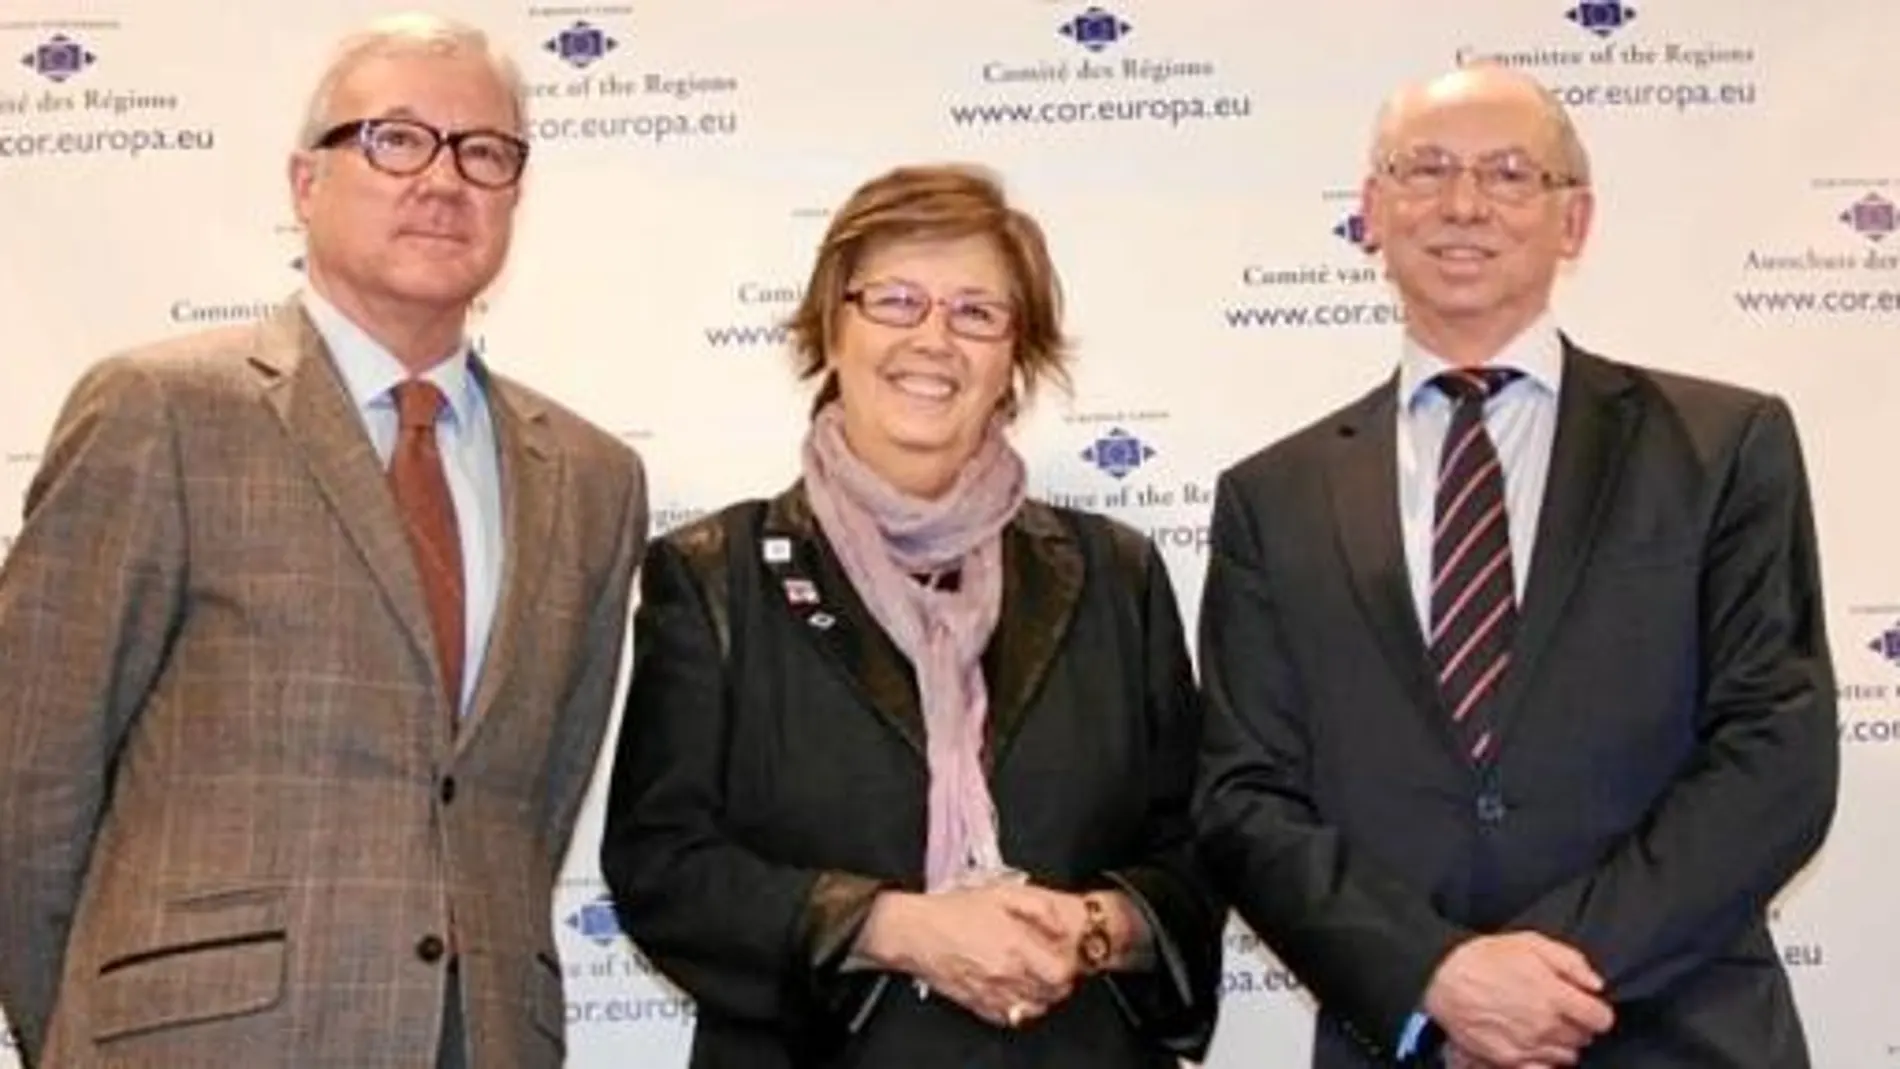 Ramón Luis Valcárcel, Mercedes Bresso y Janusz Lewandowski, tras la celebración de la sesión plenaria del Comité de las Regiones, en Bruselas